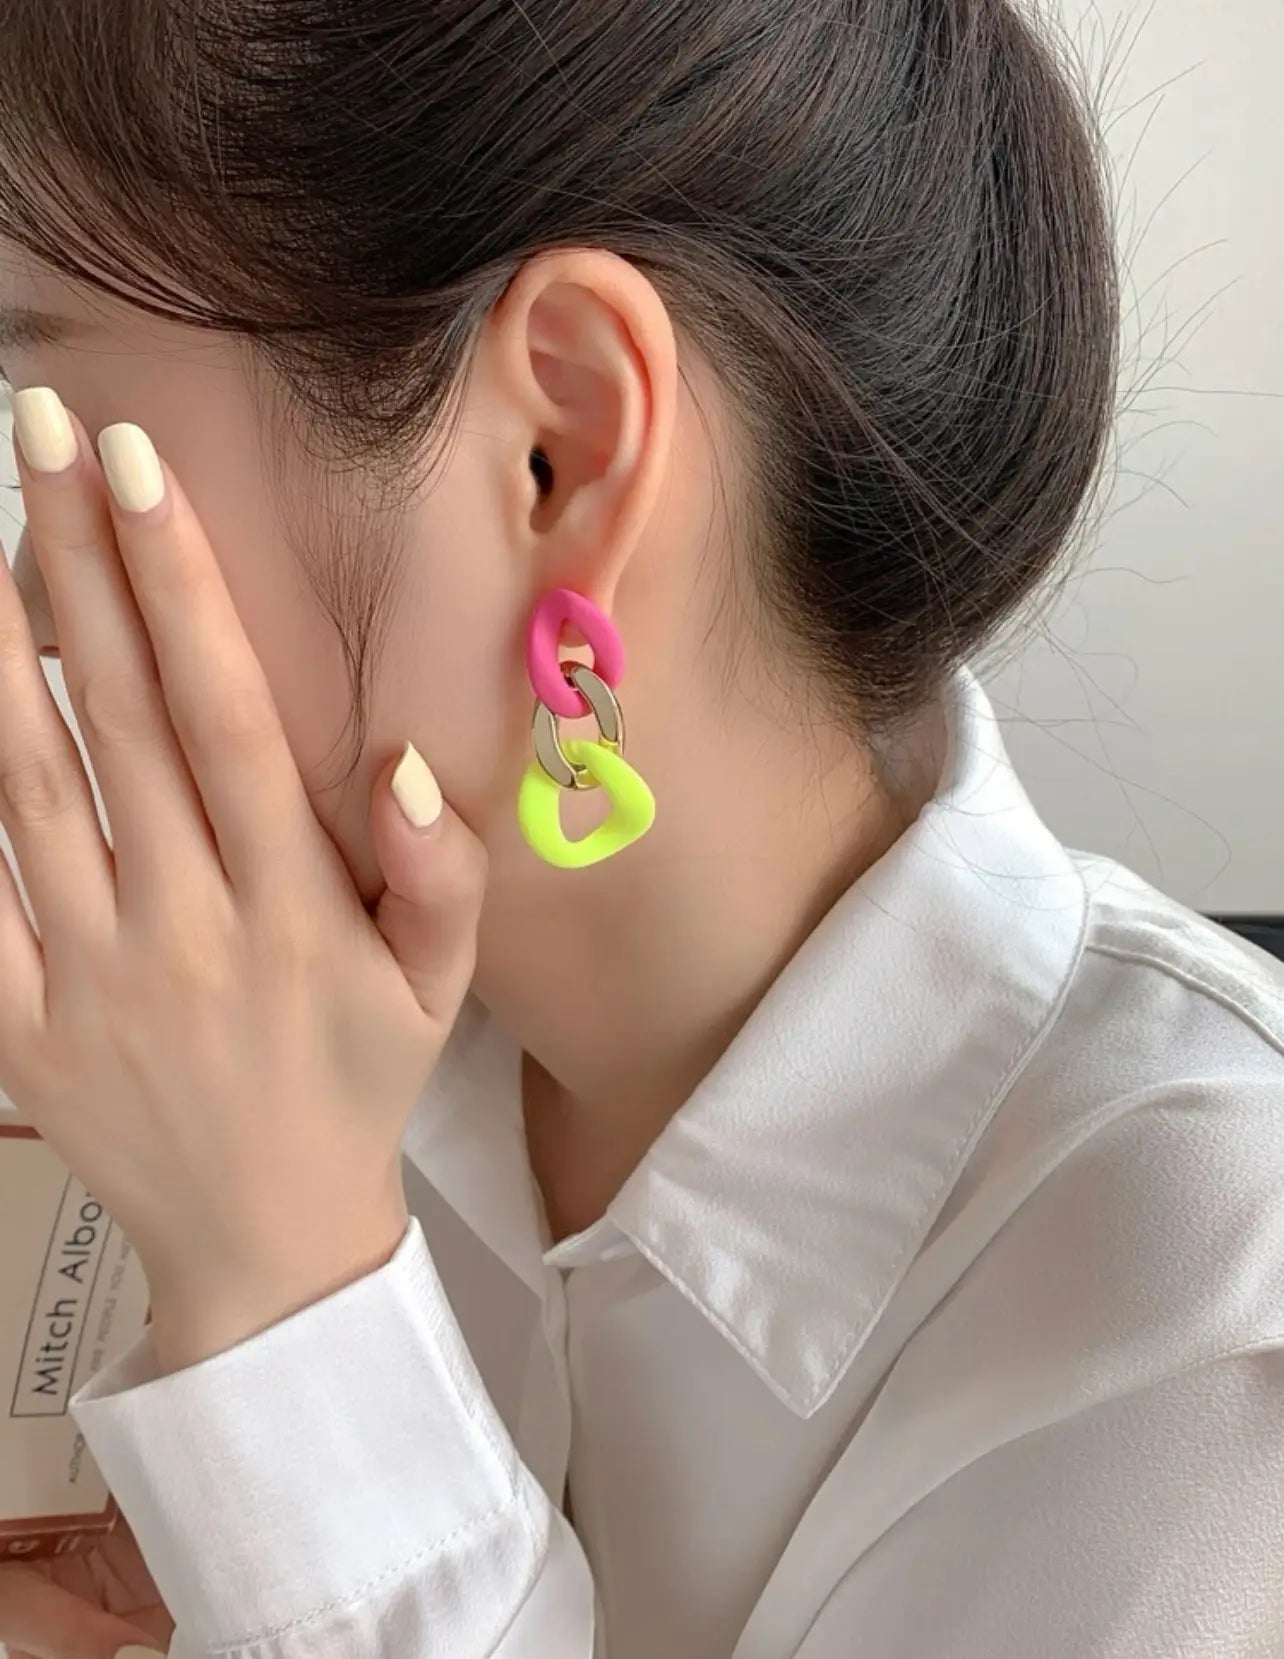 Neon Dangle Earrings